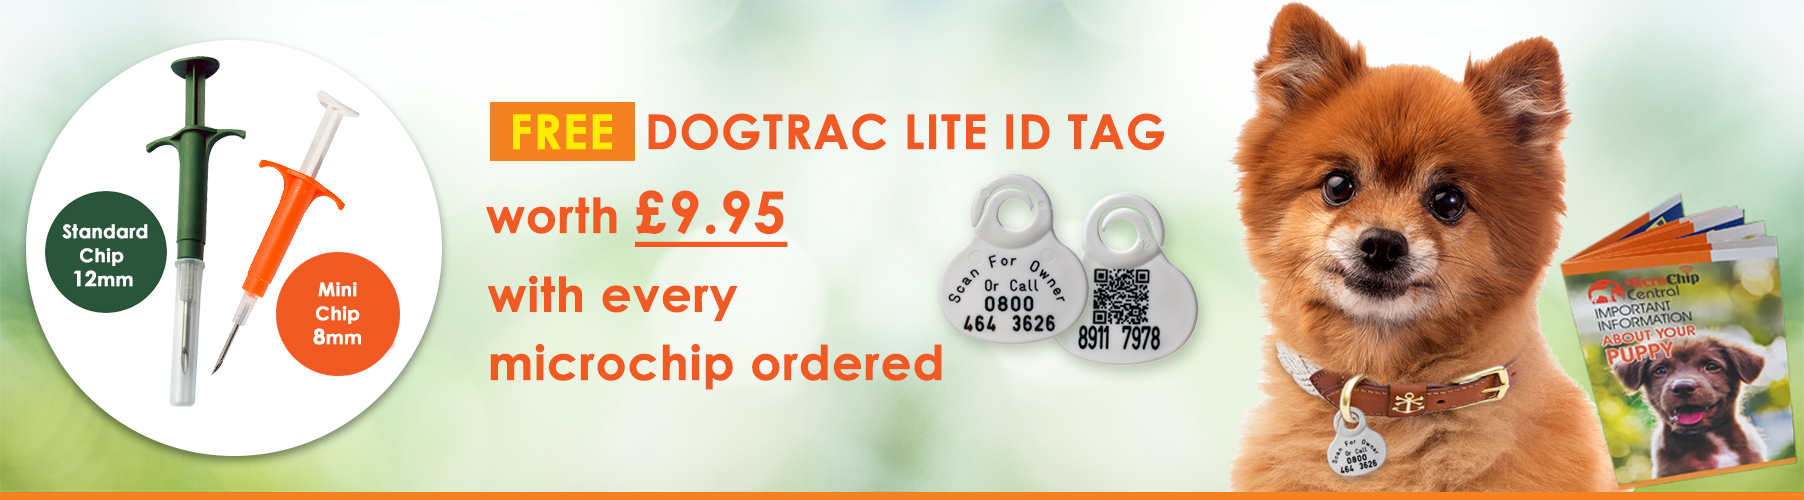 Free Dogtrac Lite ID Tags